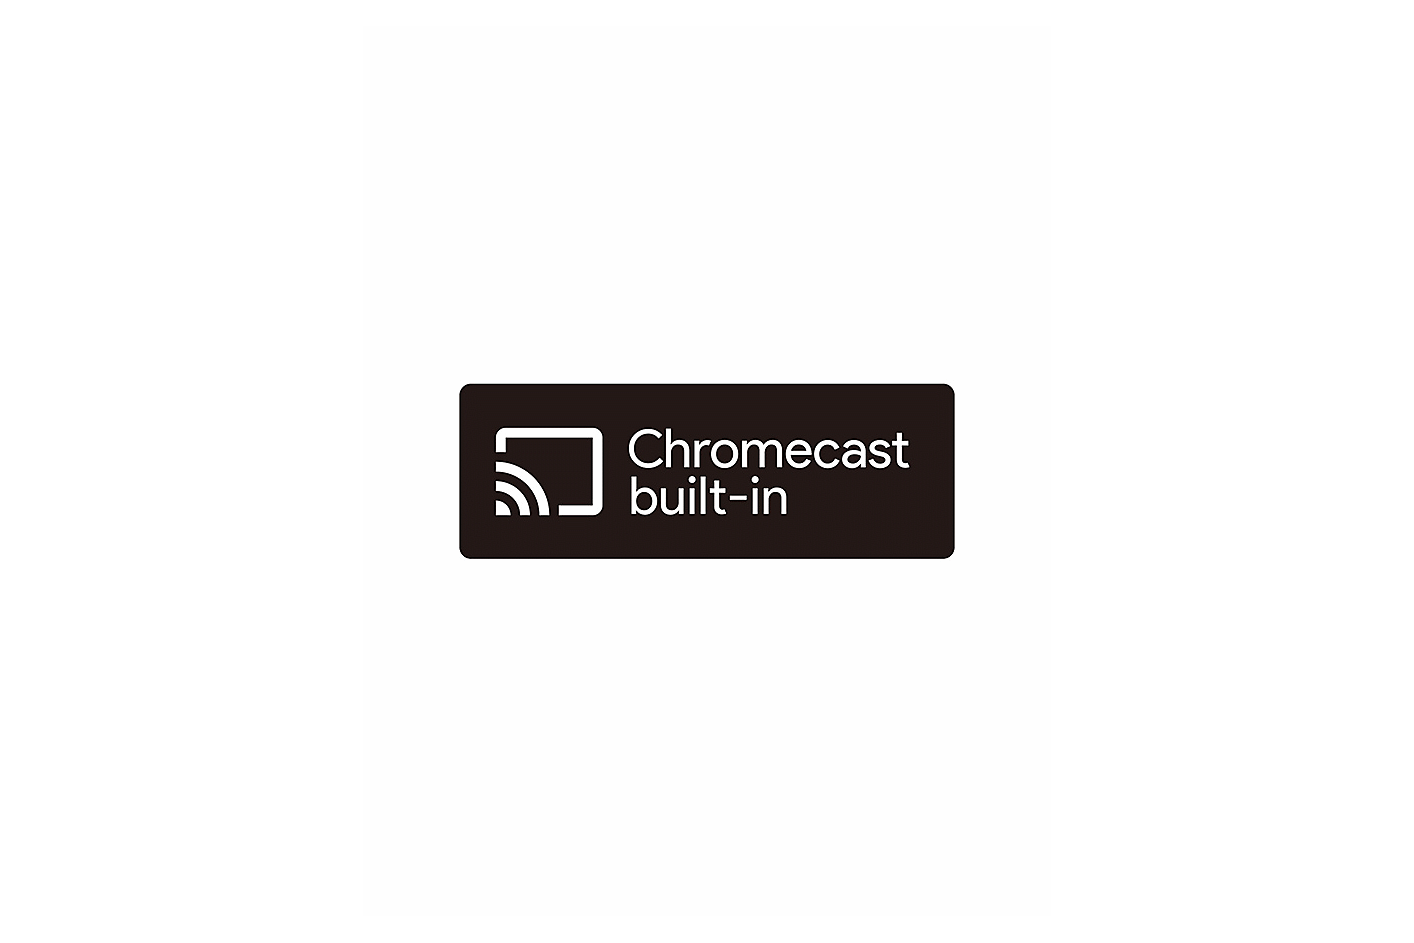 Εικόνα λογοτύπου Chromecast built-in σε μαύρο φόντο